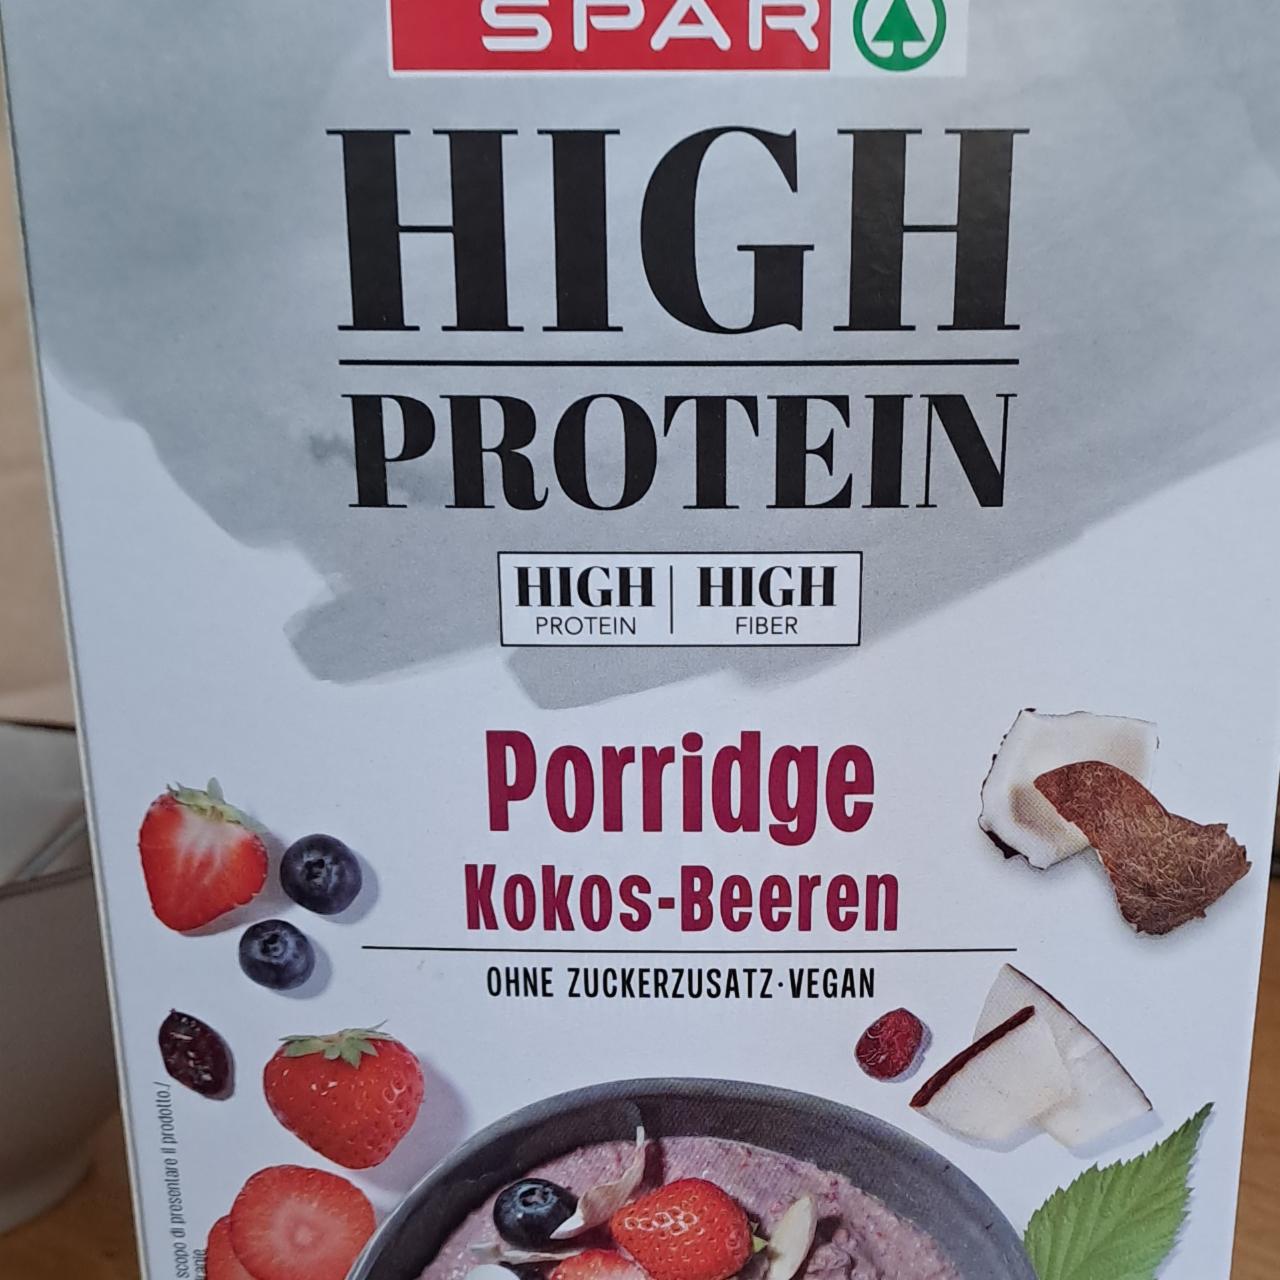 Fotografie - High protein Porridge Kokos-Beeren Spar